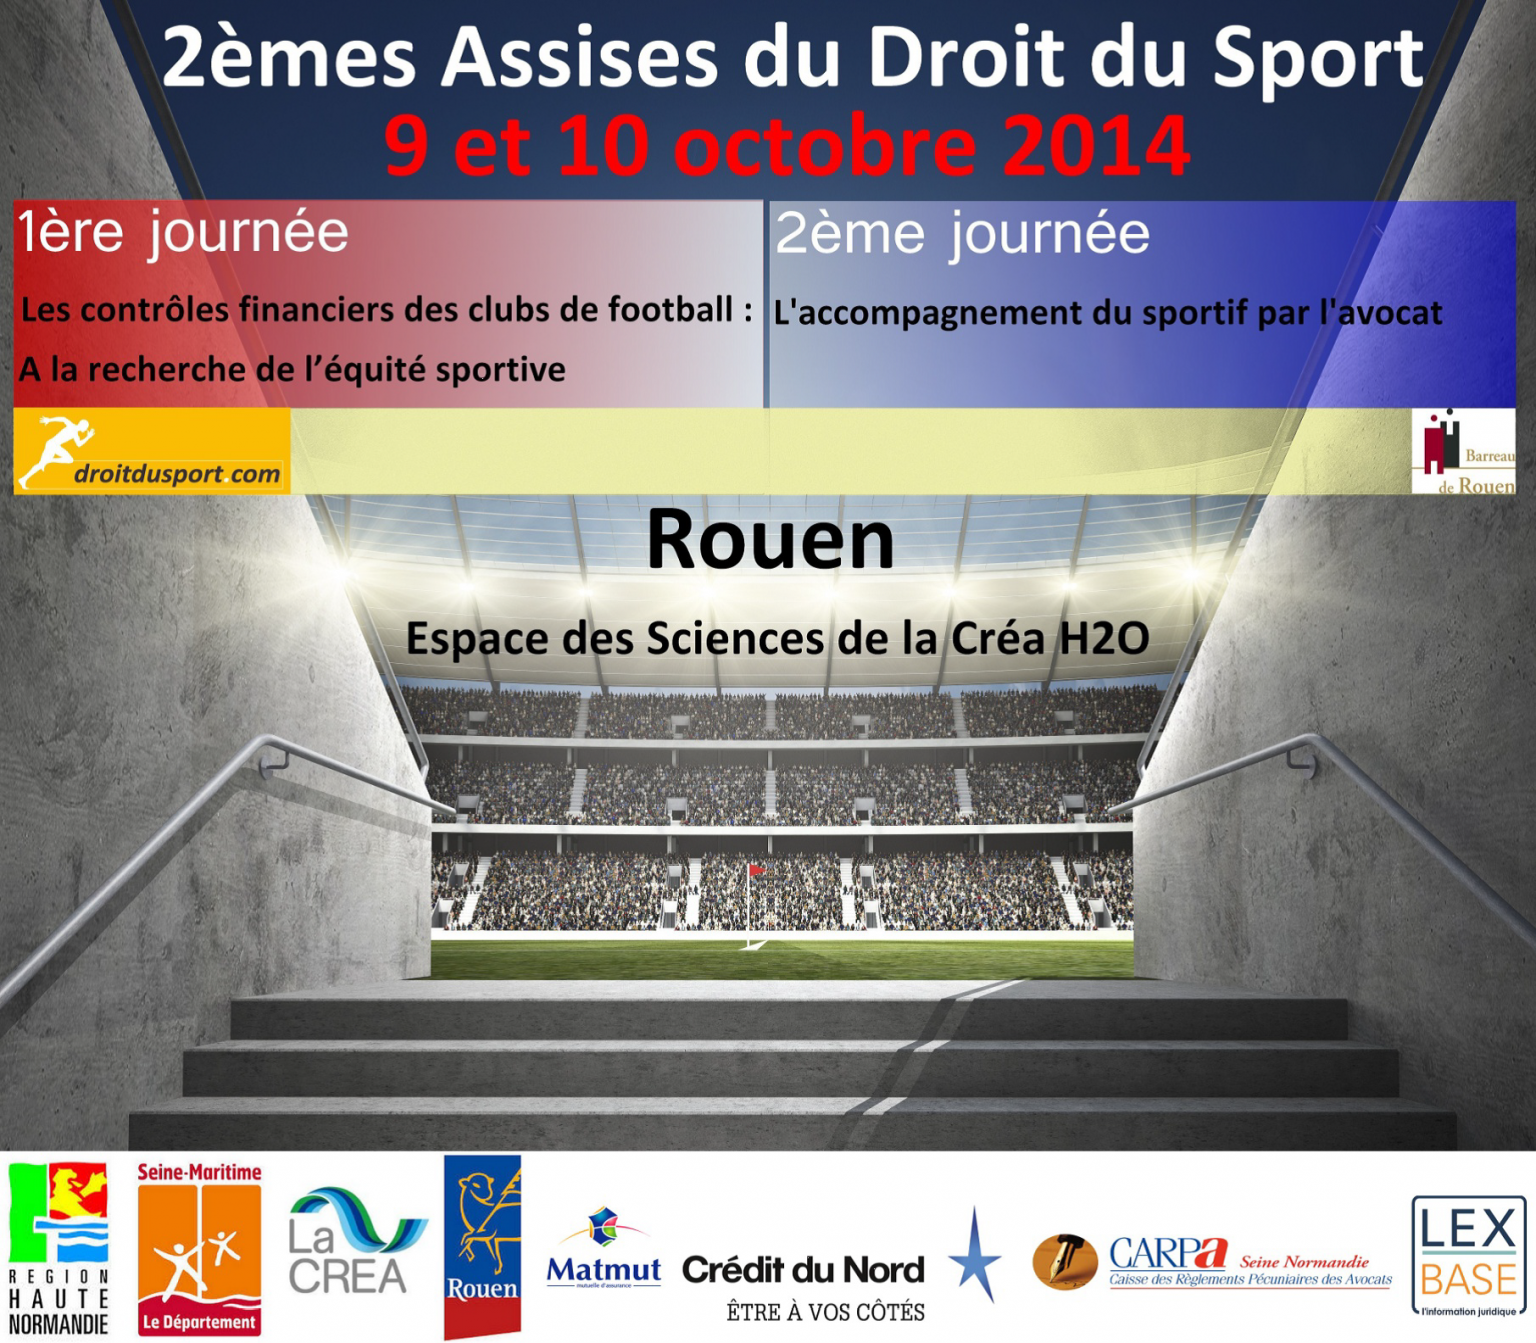 Assises du droit du sport - Rouen 9 -10 octobre 2014